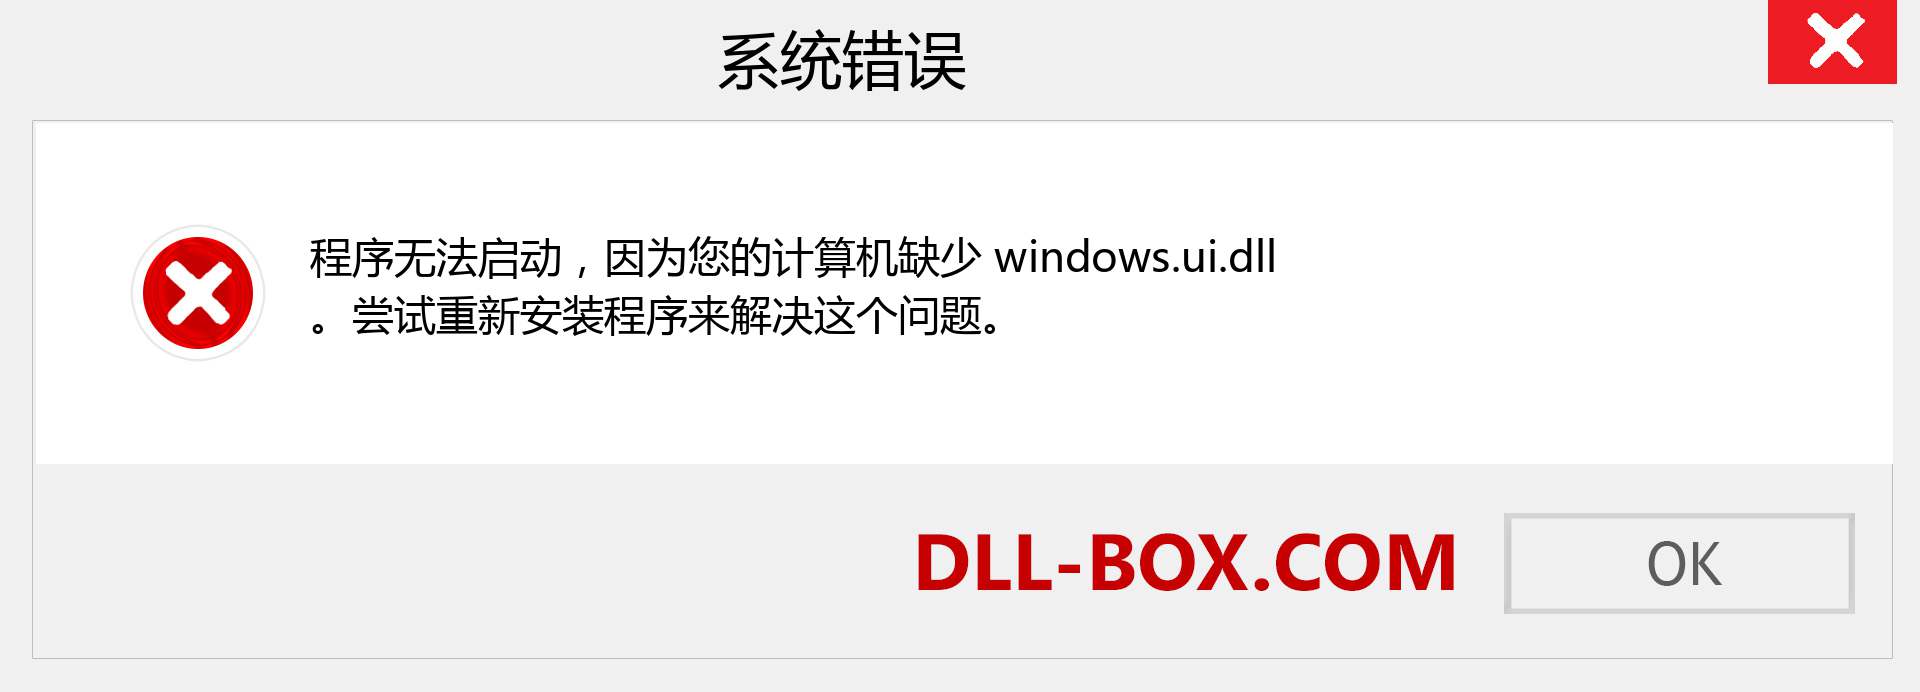 windows.ui.dll 文件丢失？。 适用于 Windows 7、8、10 的下载 - 修复 Windows、照片、图像上的 windows.ui dll 丢失错误